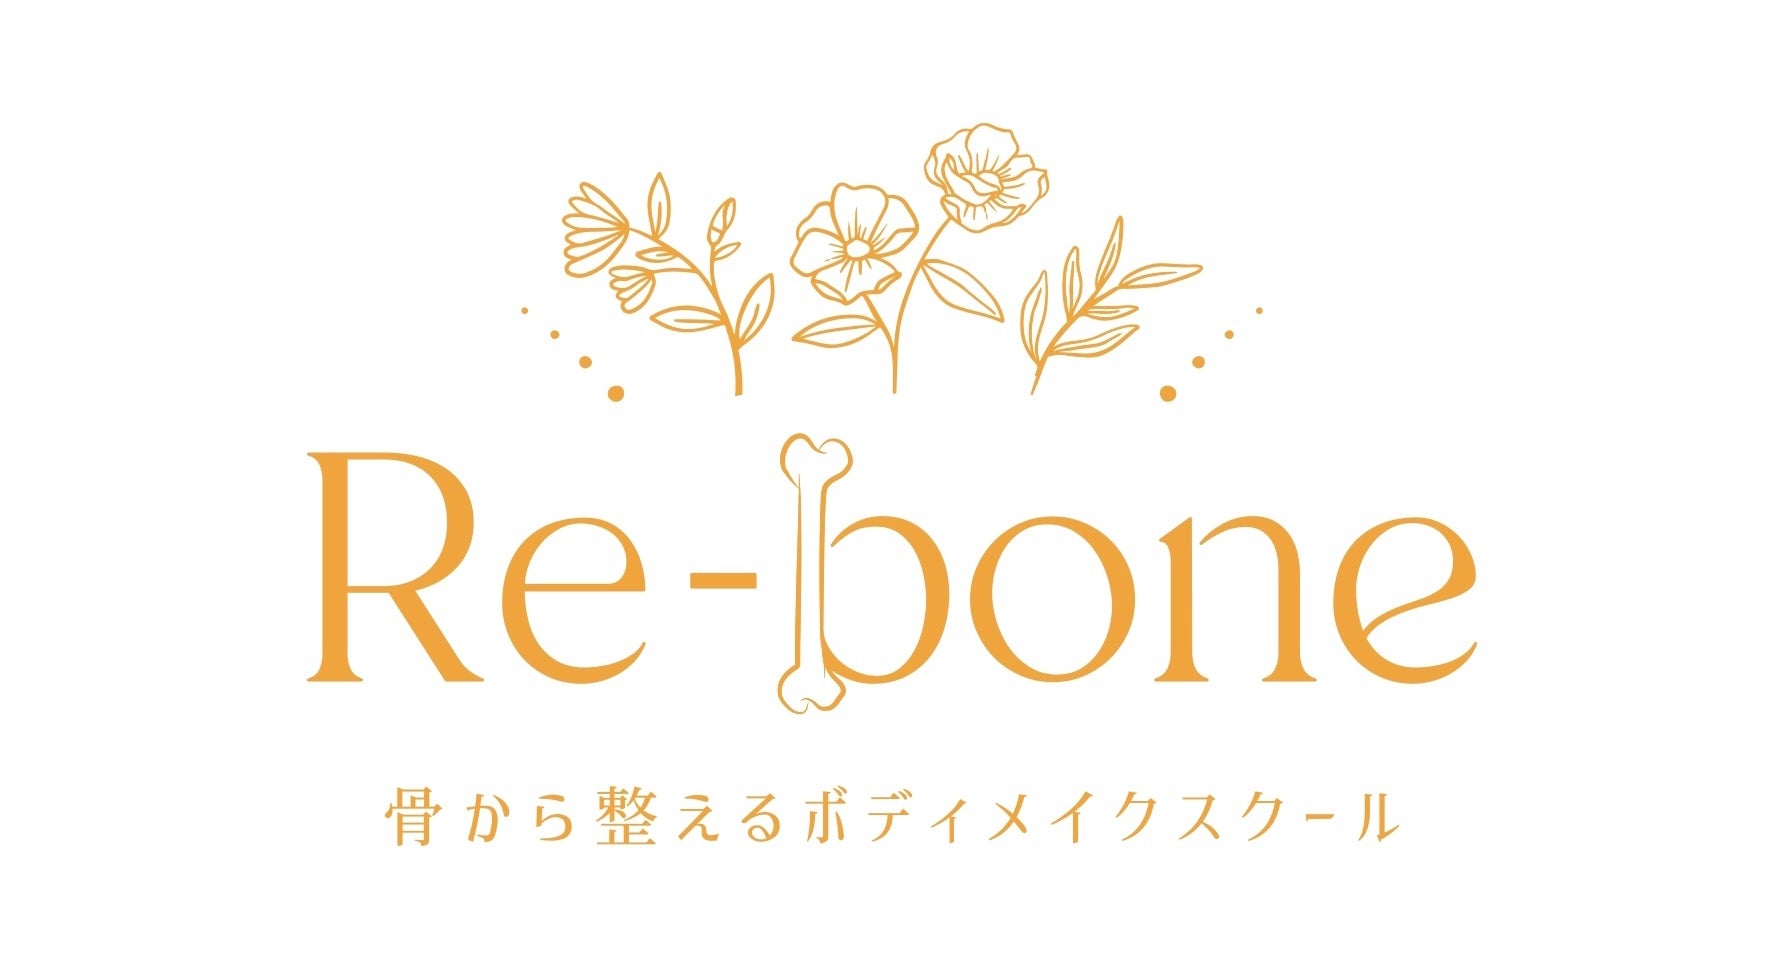 骨から整えるボディメイクスクール「Re-bone」本出版を記念した地方レッスンツアーを催行